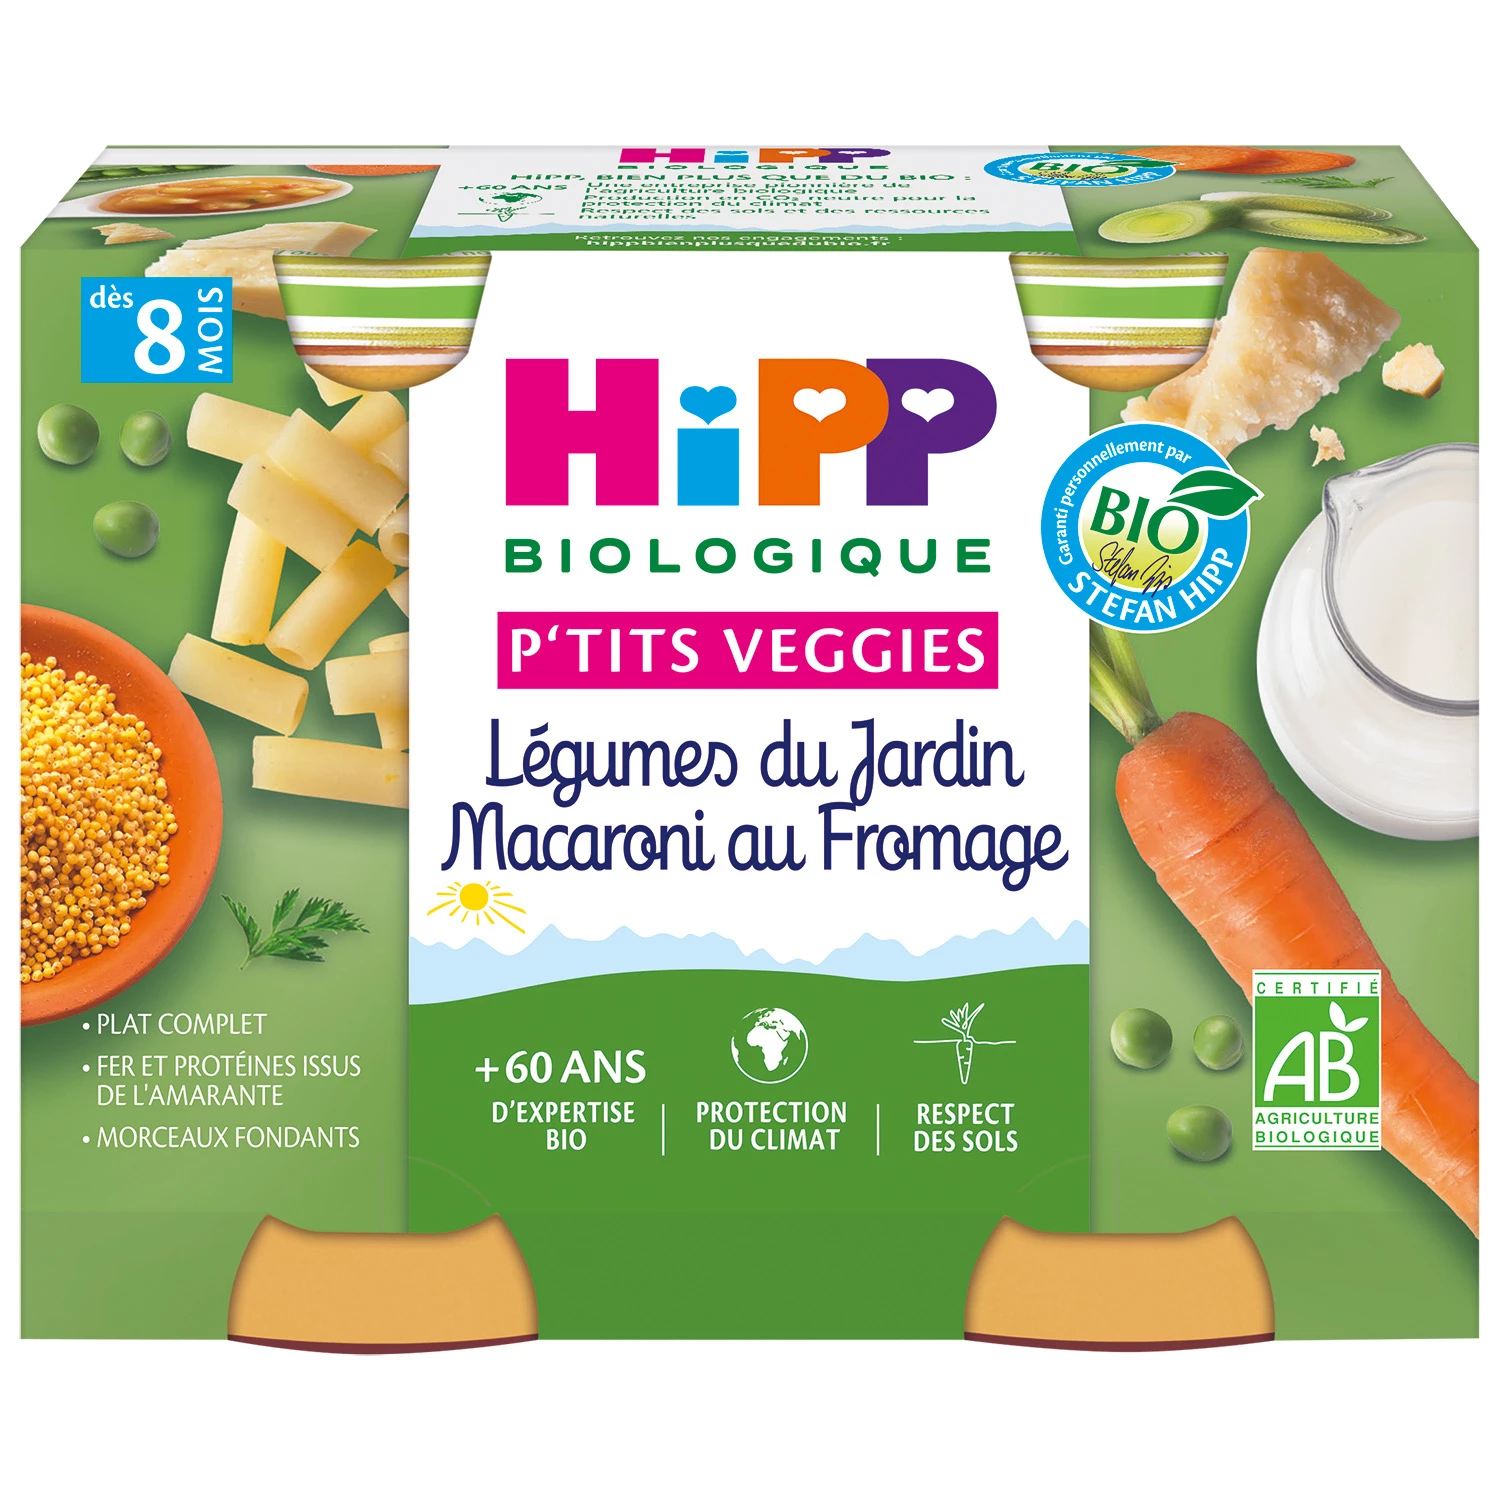 Petits pots bébé dès 8 mois Légumes du jardin macaroni au fromage Bio, 2 pots de 190g HIPP BioLOGIQUE